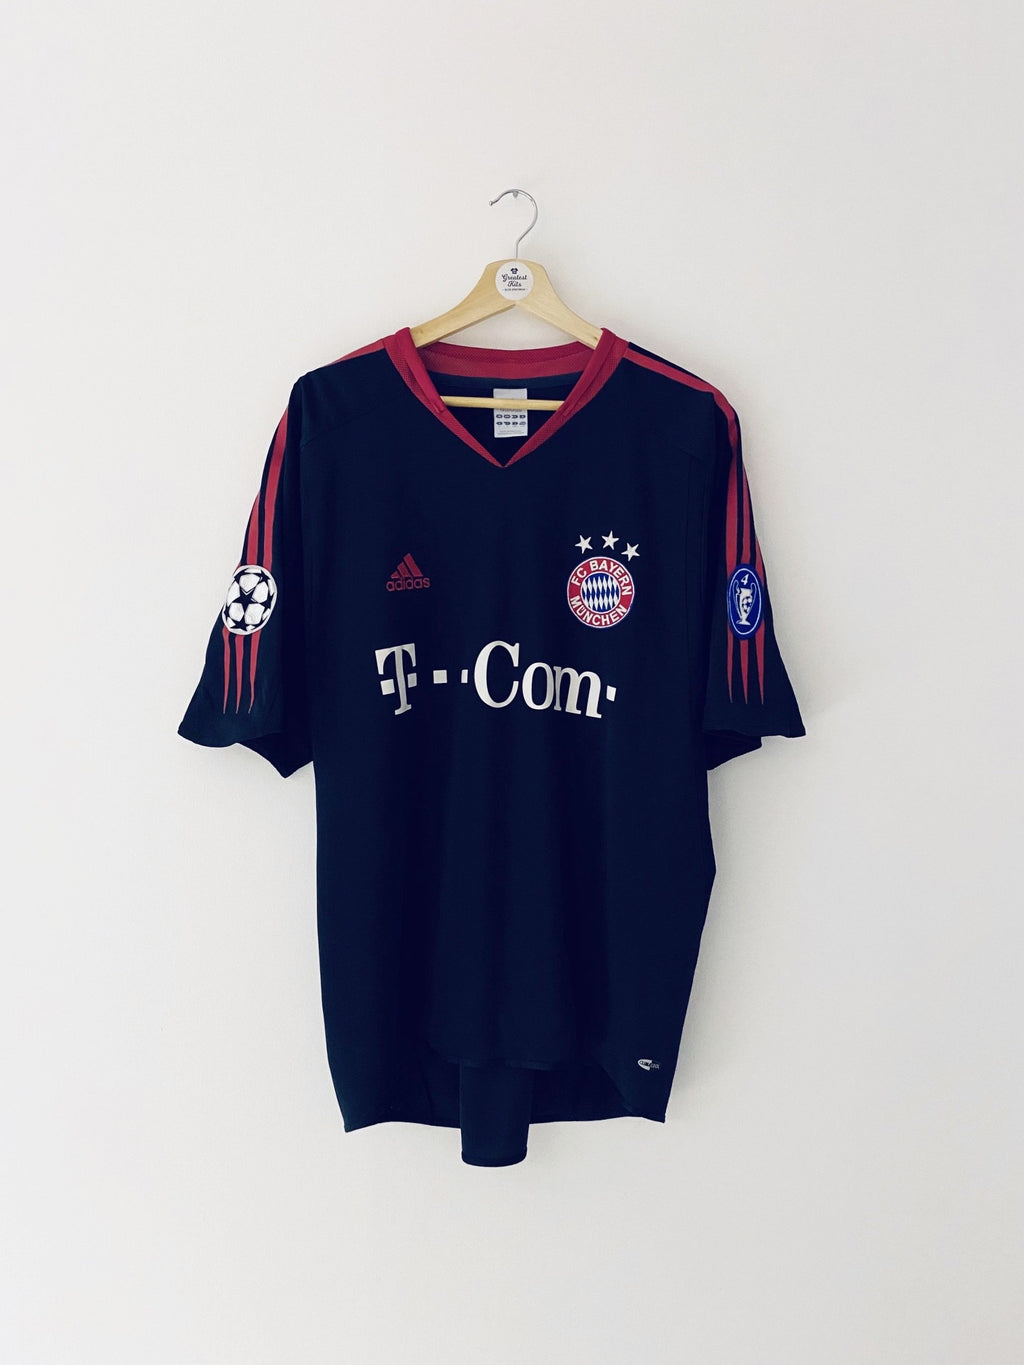 Maillot CL Bayern Munich 2004/05 (L) 8.5/10 